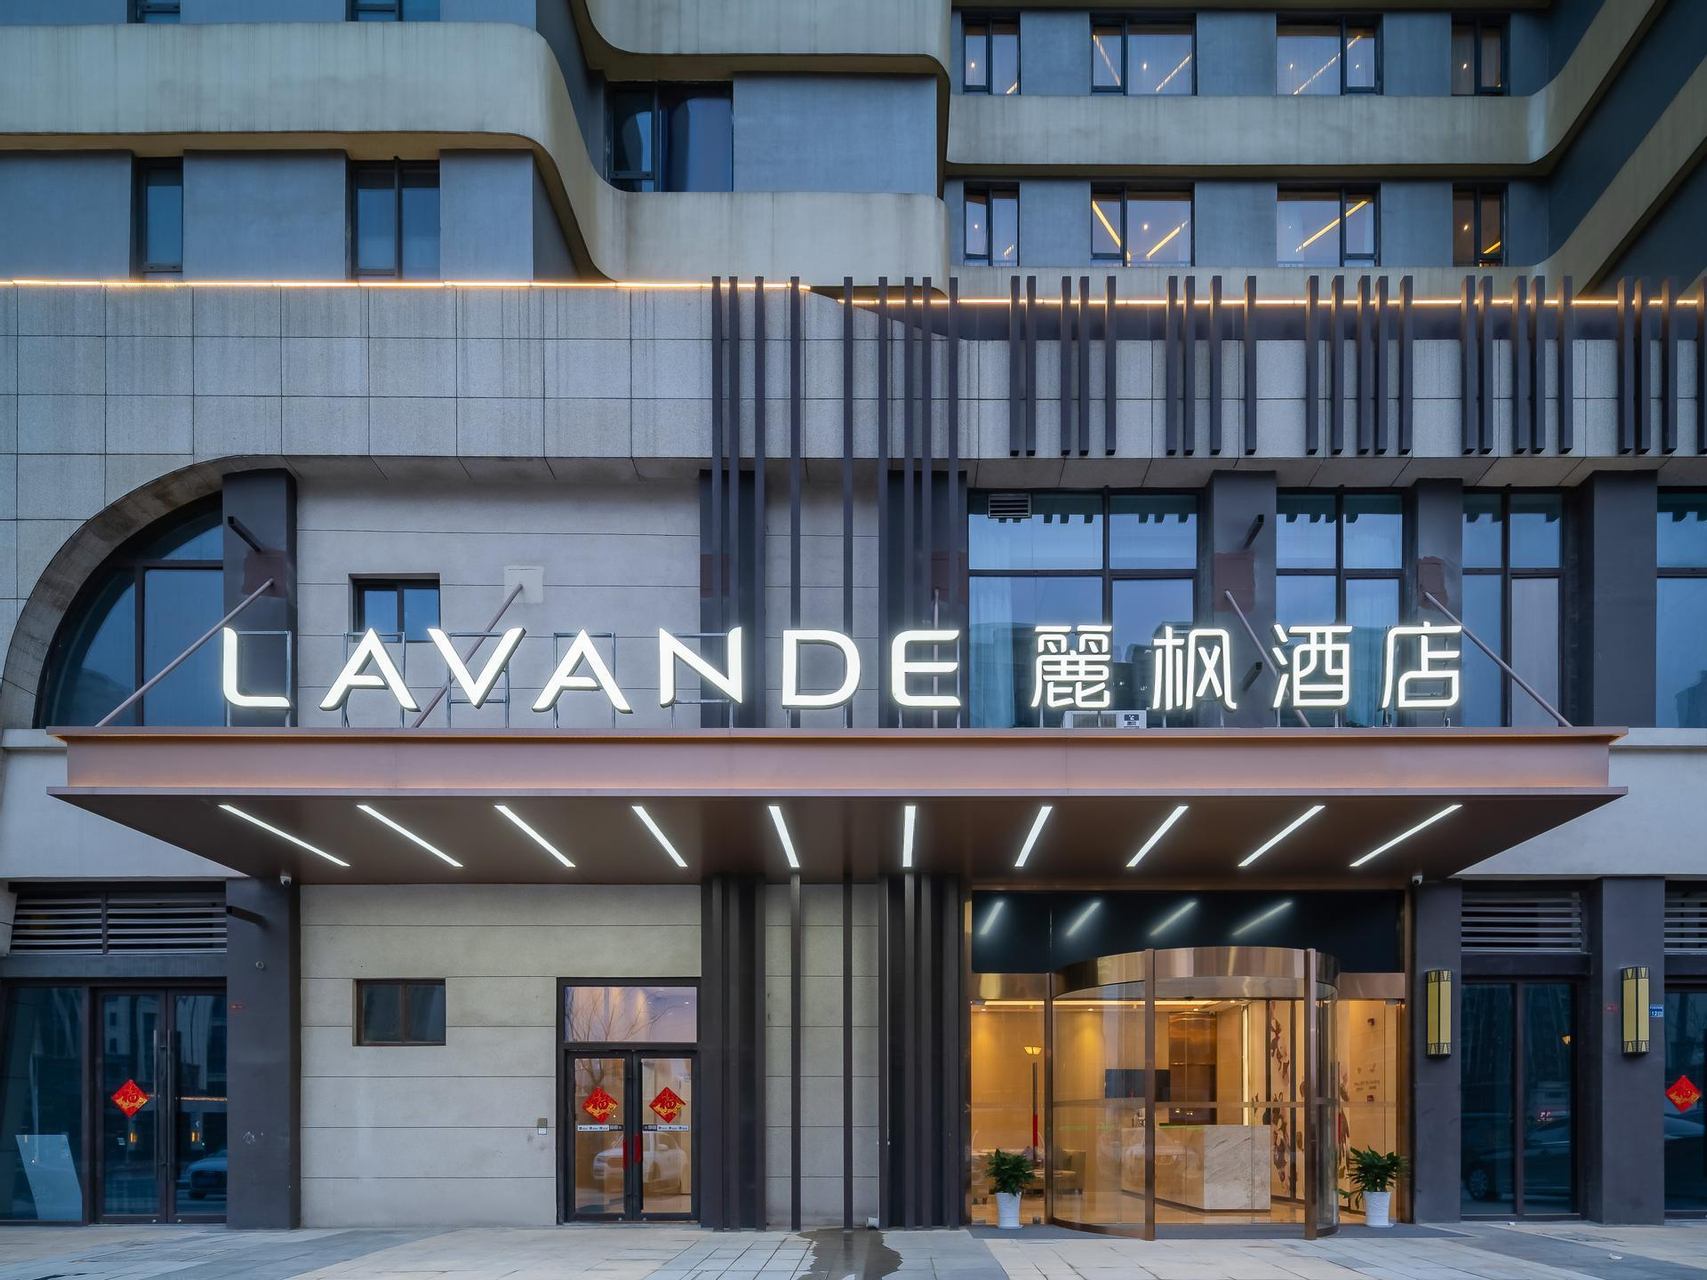 Exterior & Views 5, Lavande Hotel Nanjing Lishui Wanda Plaza Xingzhuang Metro Station, Nanjing